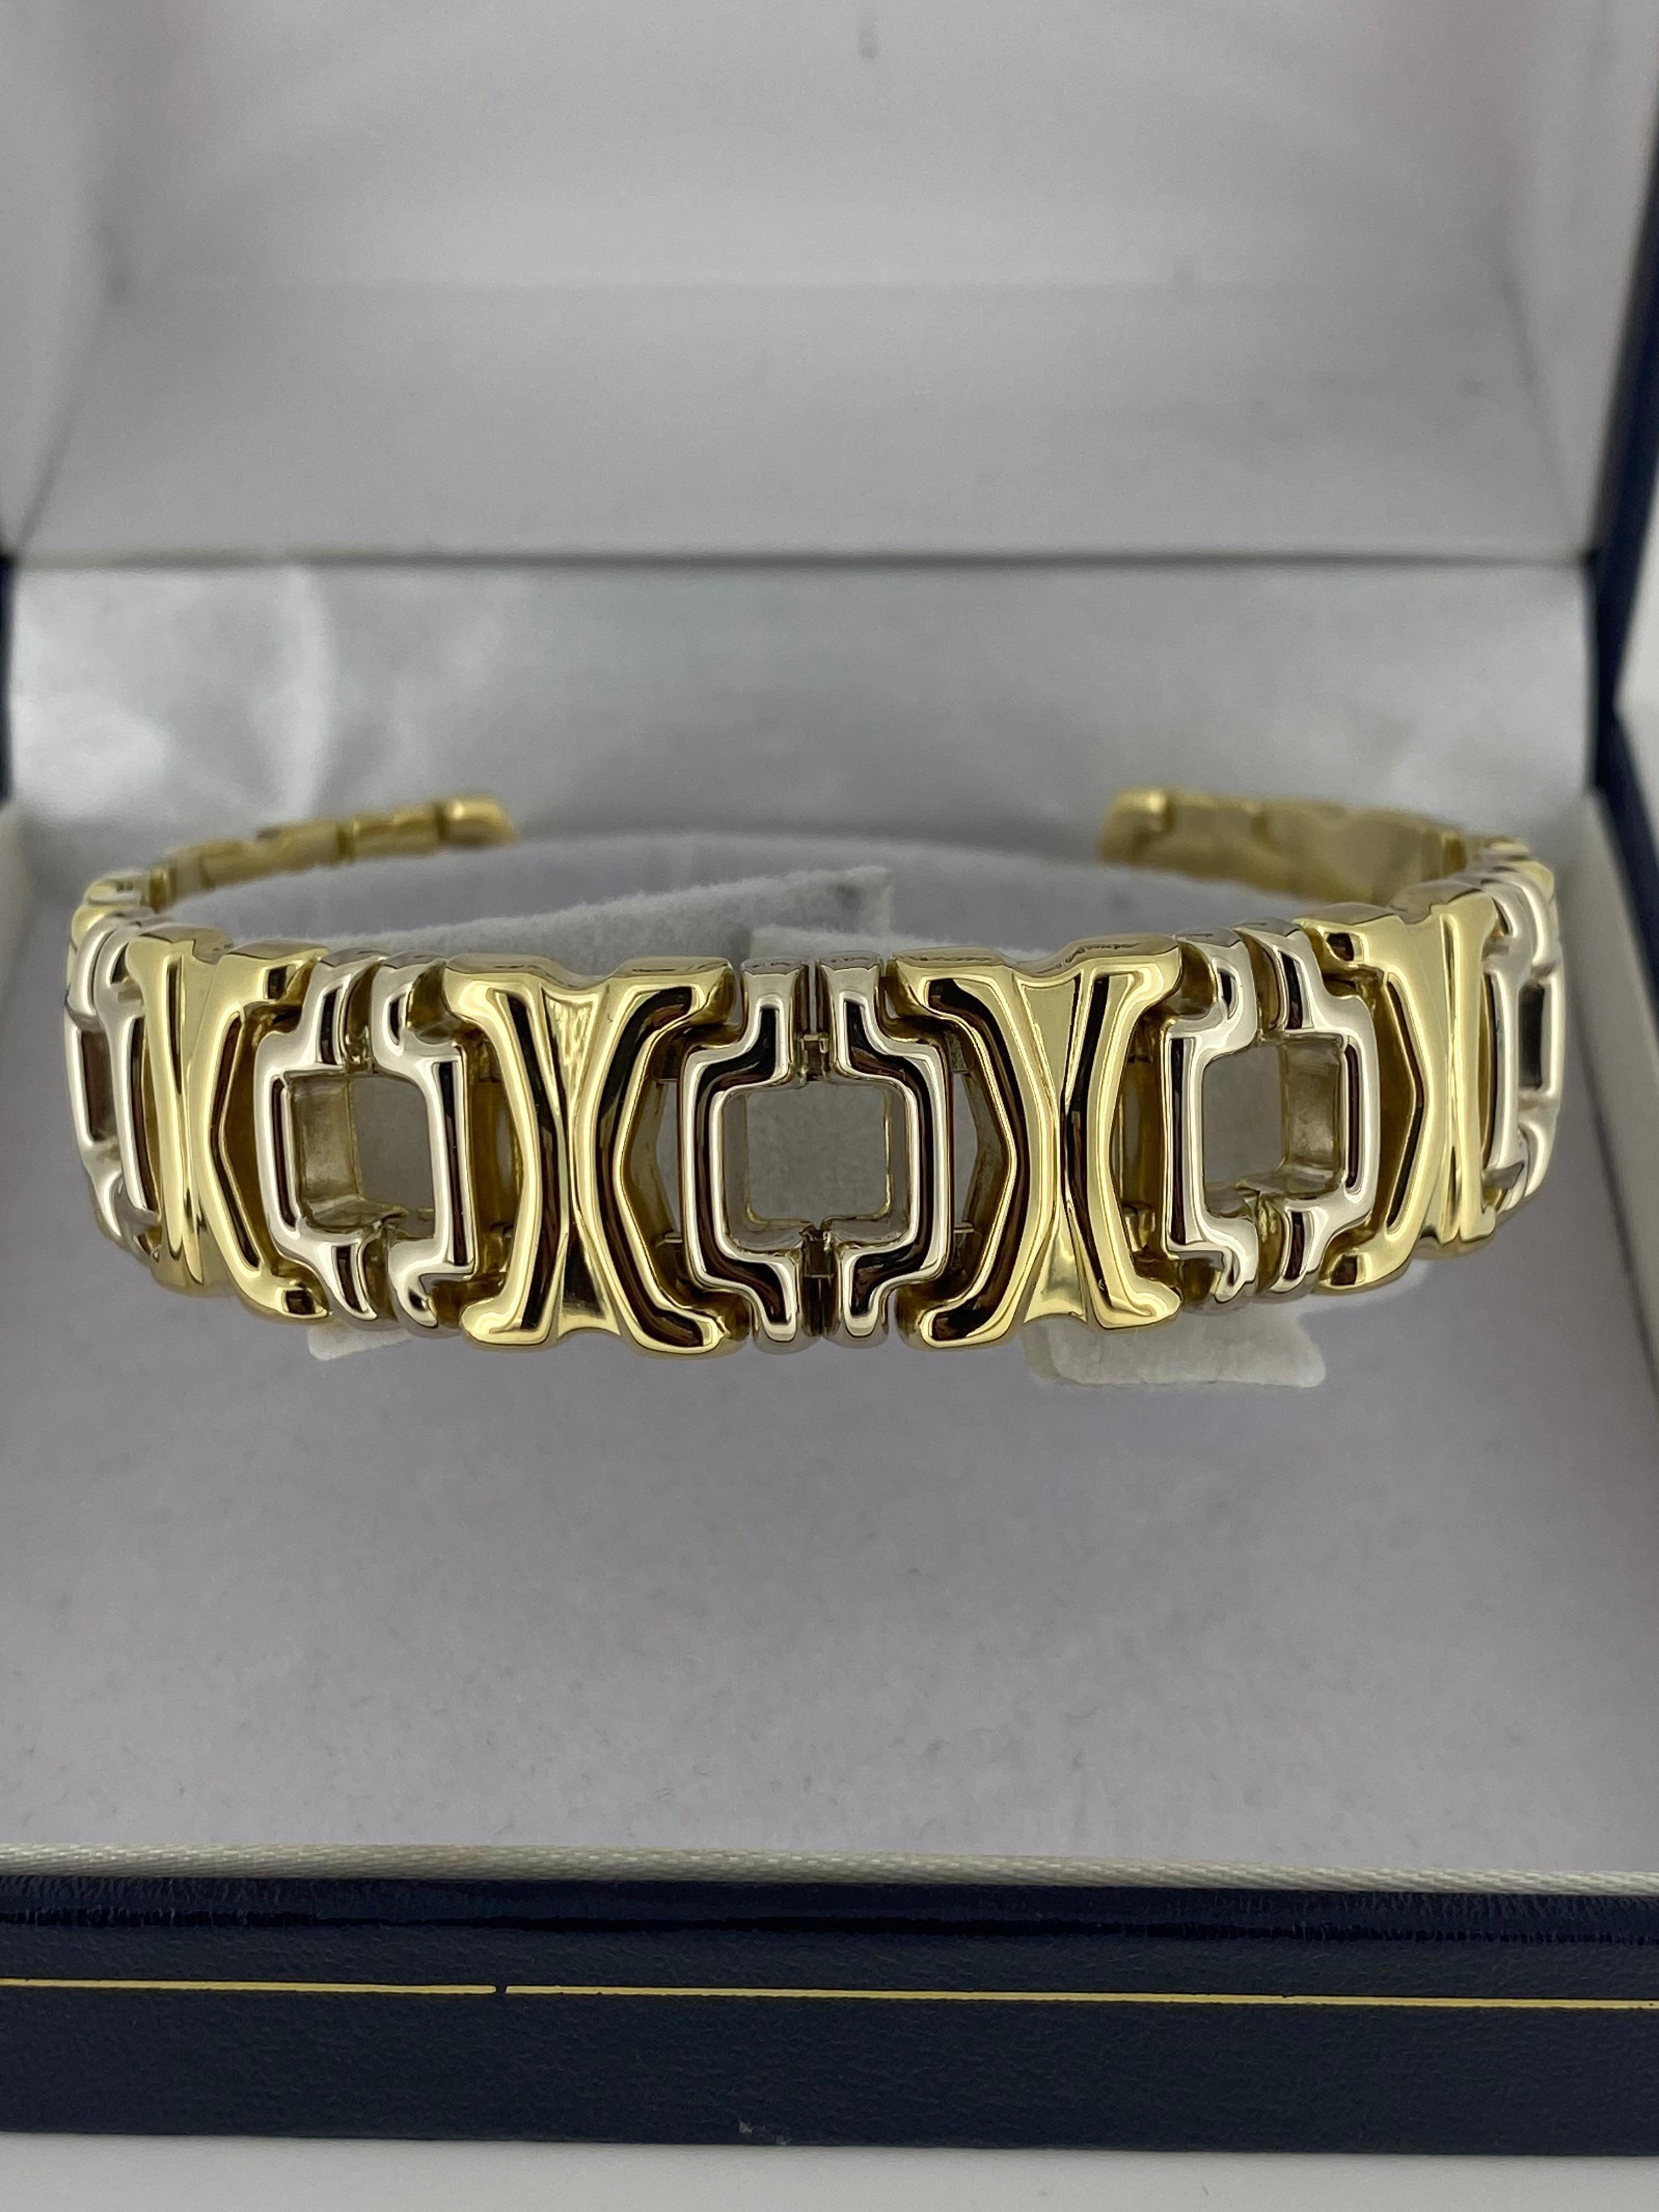 D'un étonnant design ajouré, ce bracelet de style Cartier 
est délicatement fabriqué en Italie au début des années 2000 

mesurant 15 mm de large et ayant une circonférence de 19 cm
Il présente des sections alternées en or blanc et jaune. 
qui